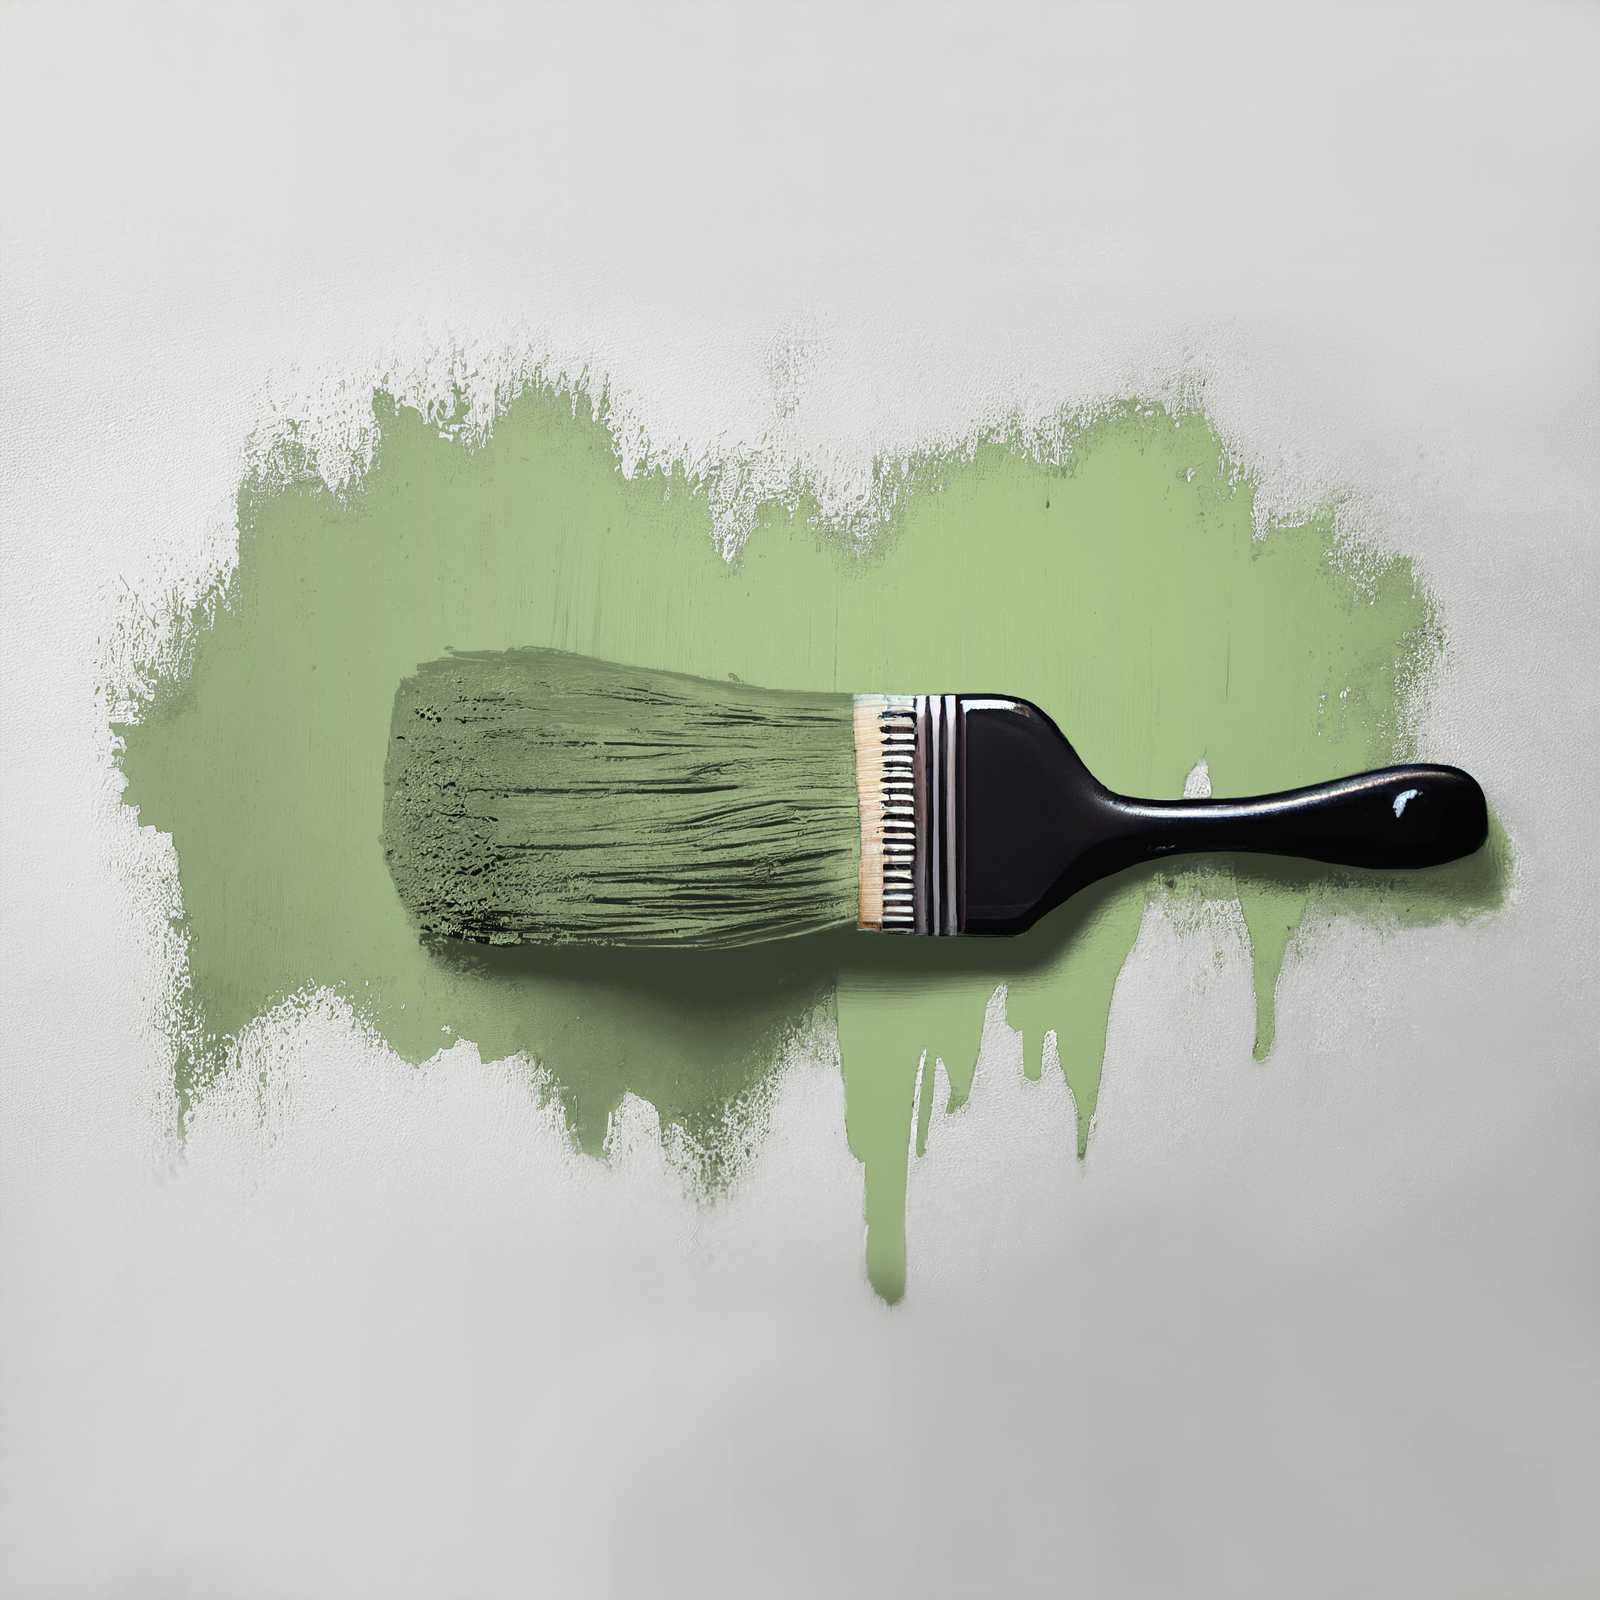             Wandfarbe in lebendigem Grün »Green Grape« TCK4008 – 5 Liter
        